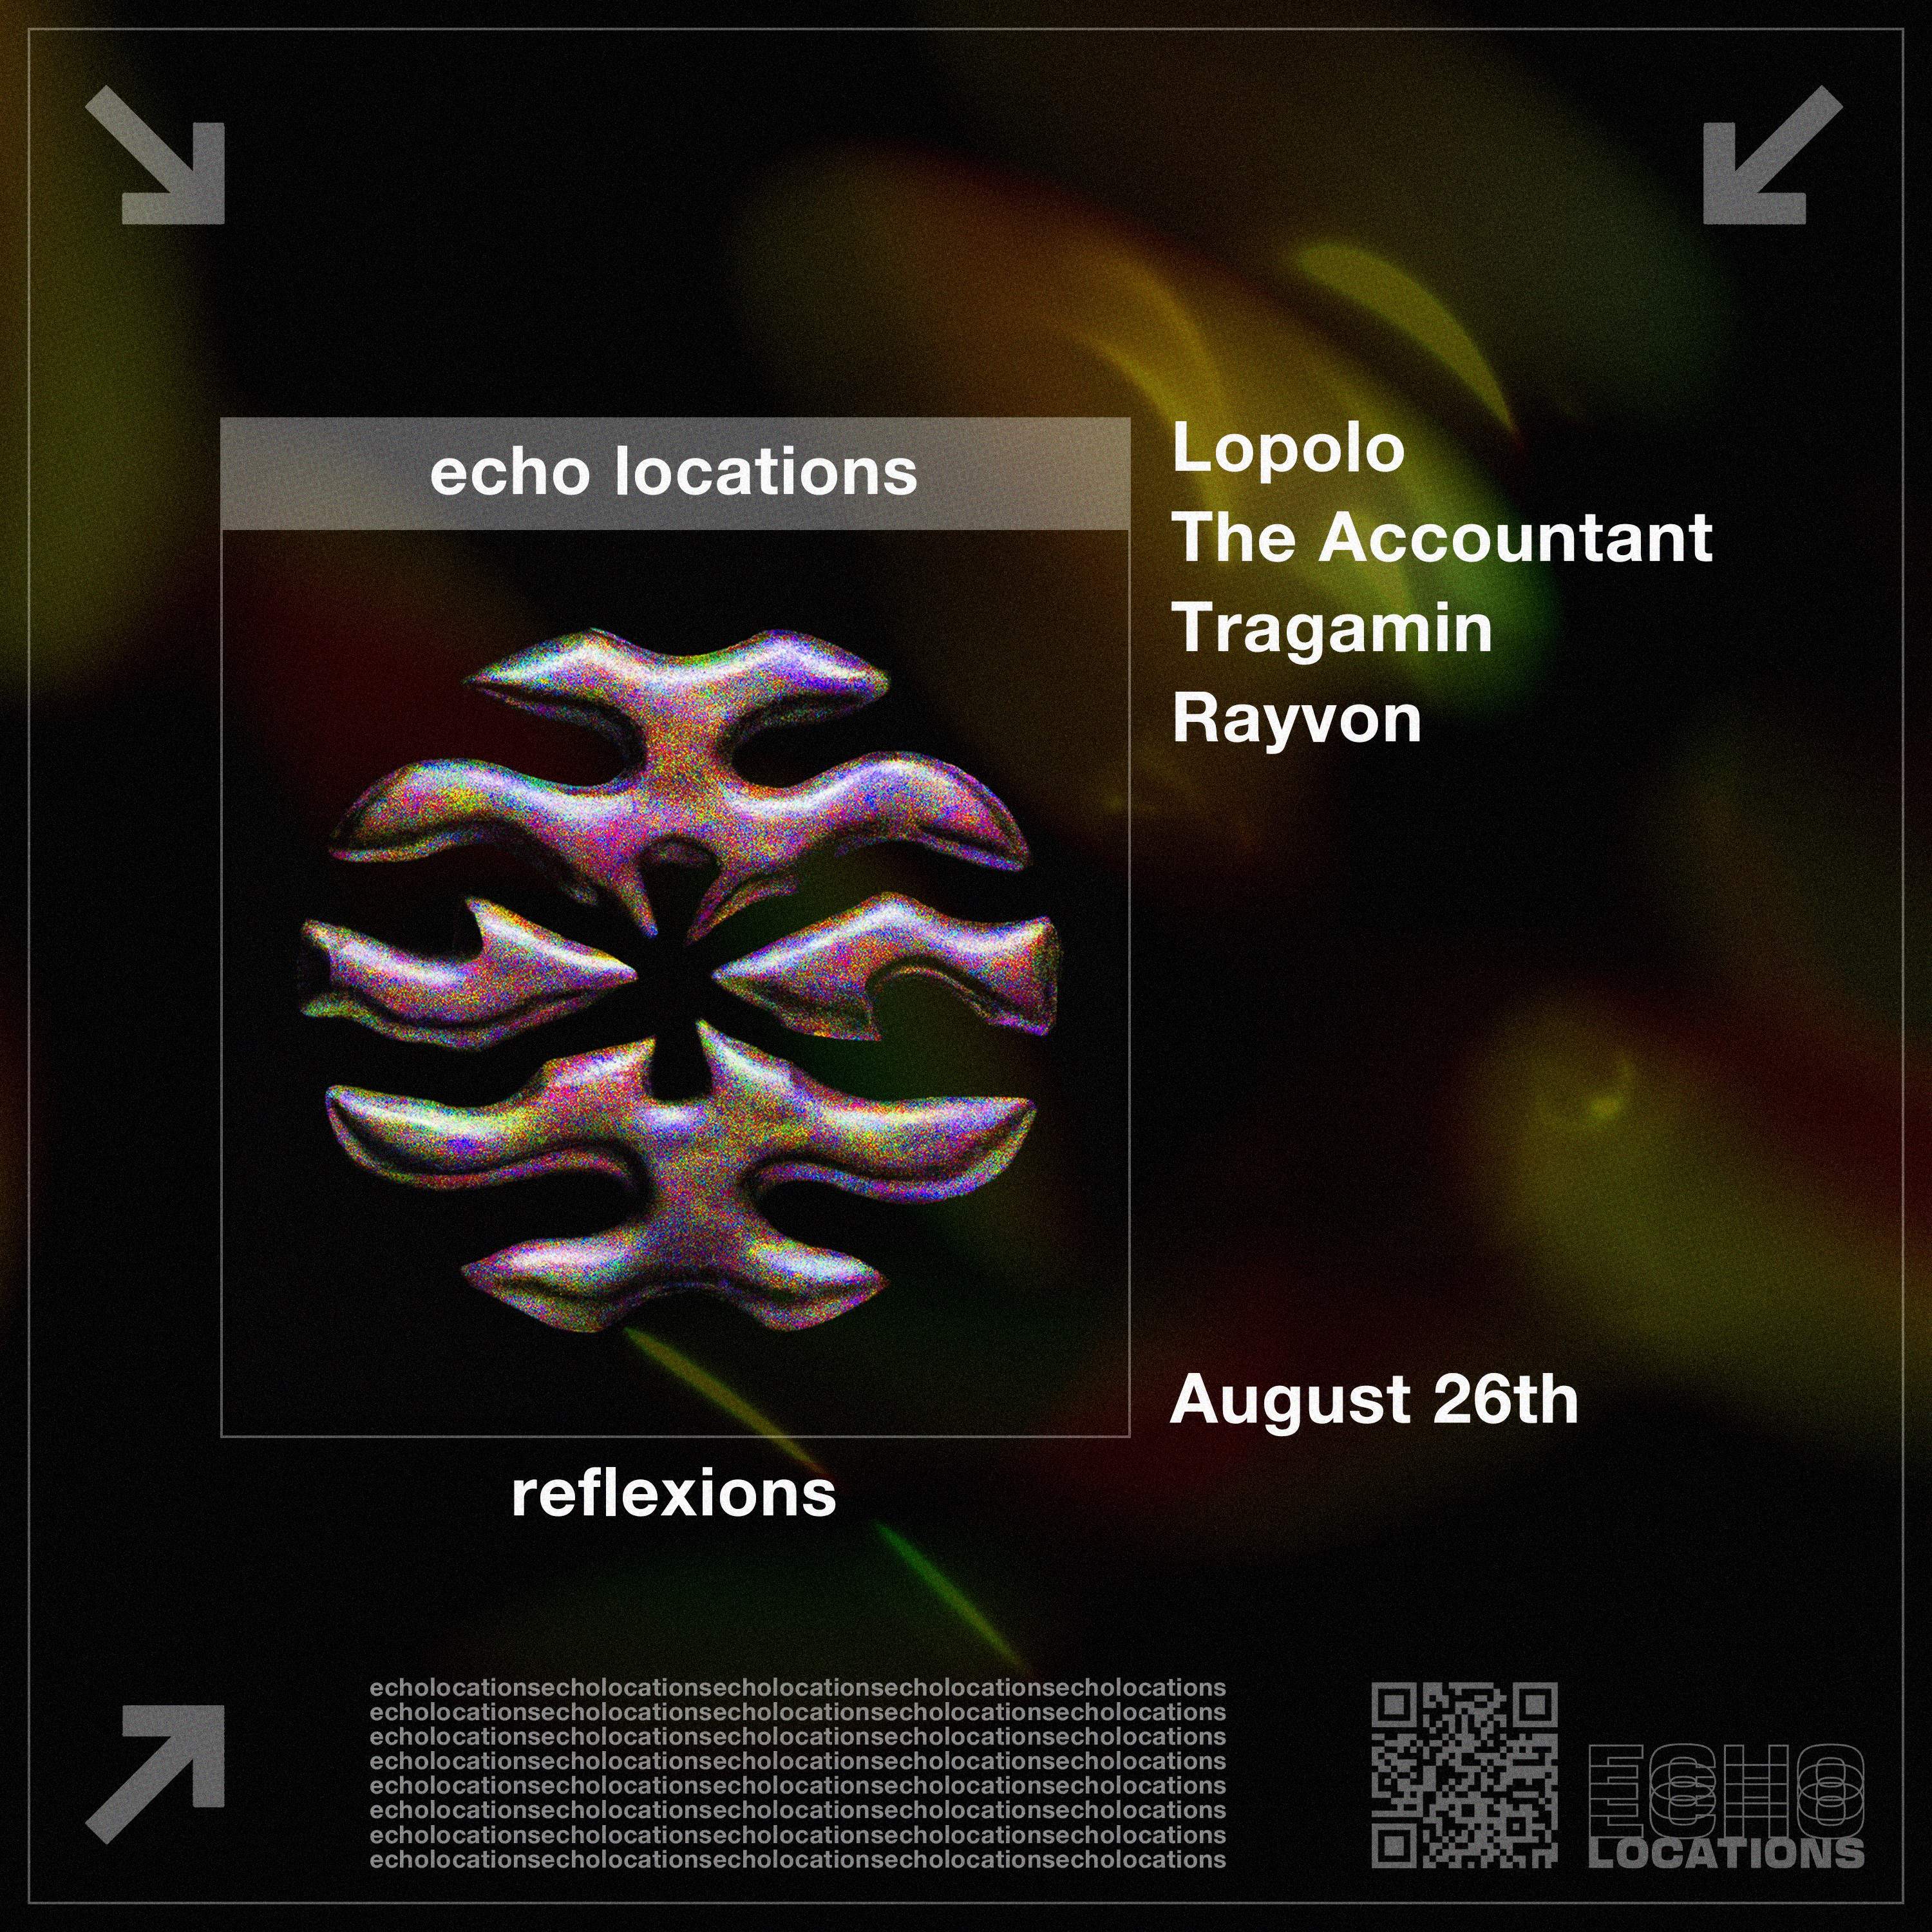 Echo Locations presents: Reflexions - Página frontal